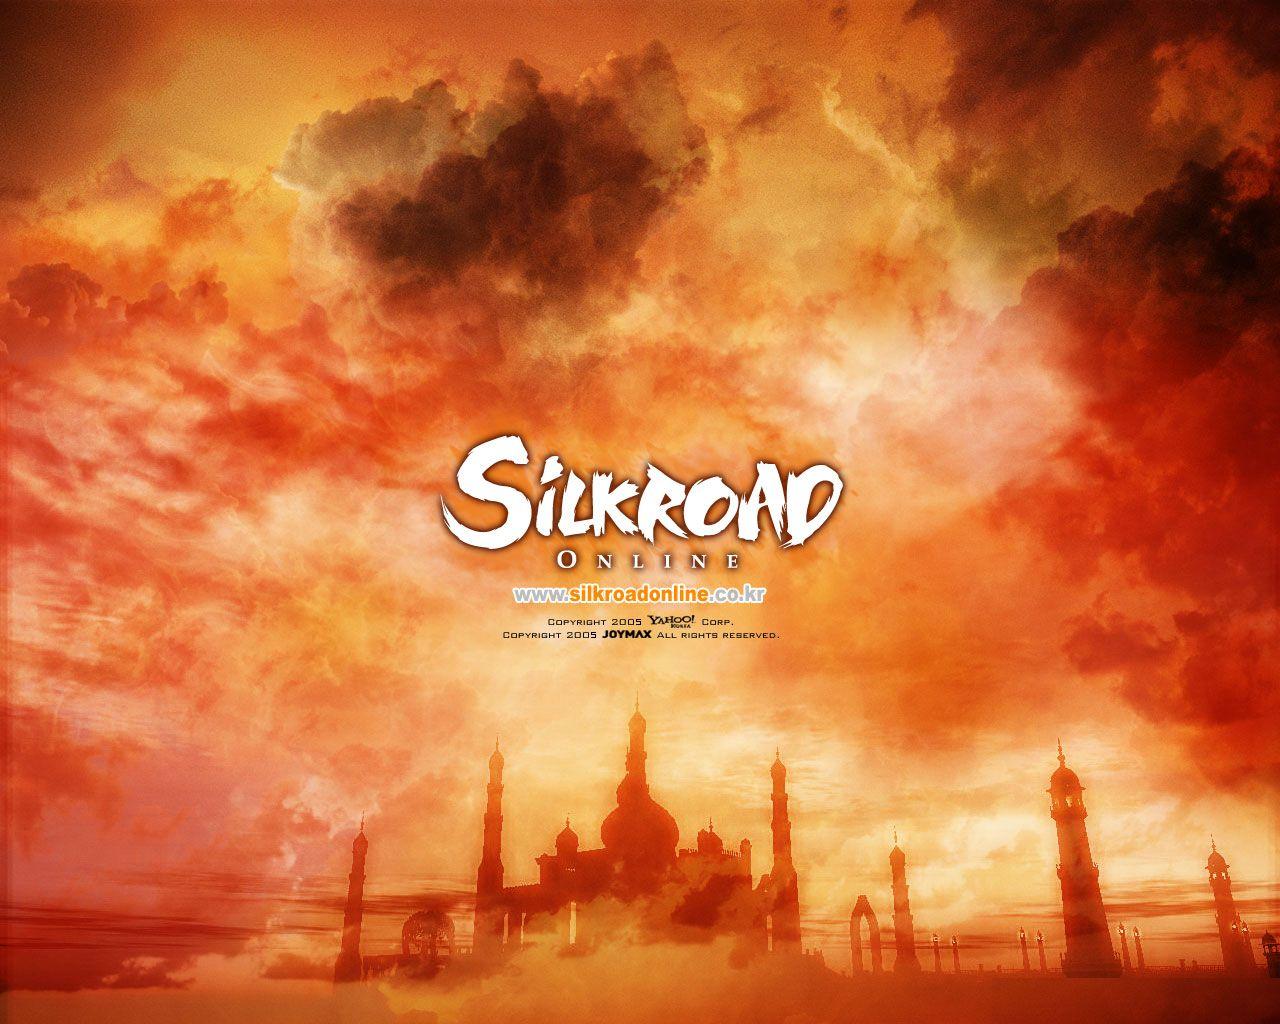 Silkroad Online Official Website HD wallpaper  Pxfuel